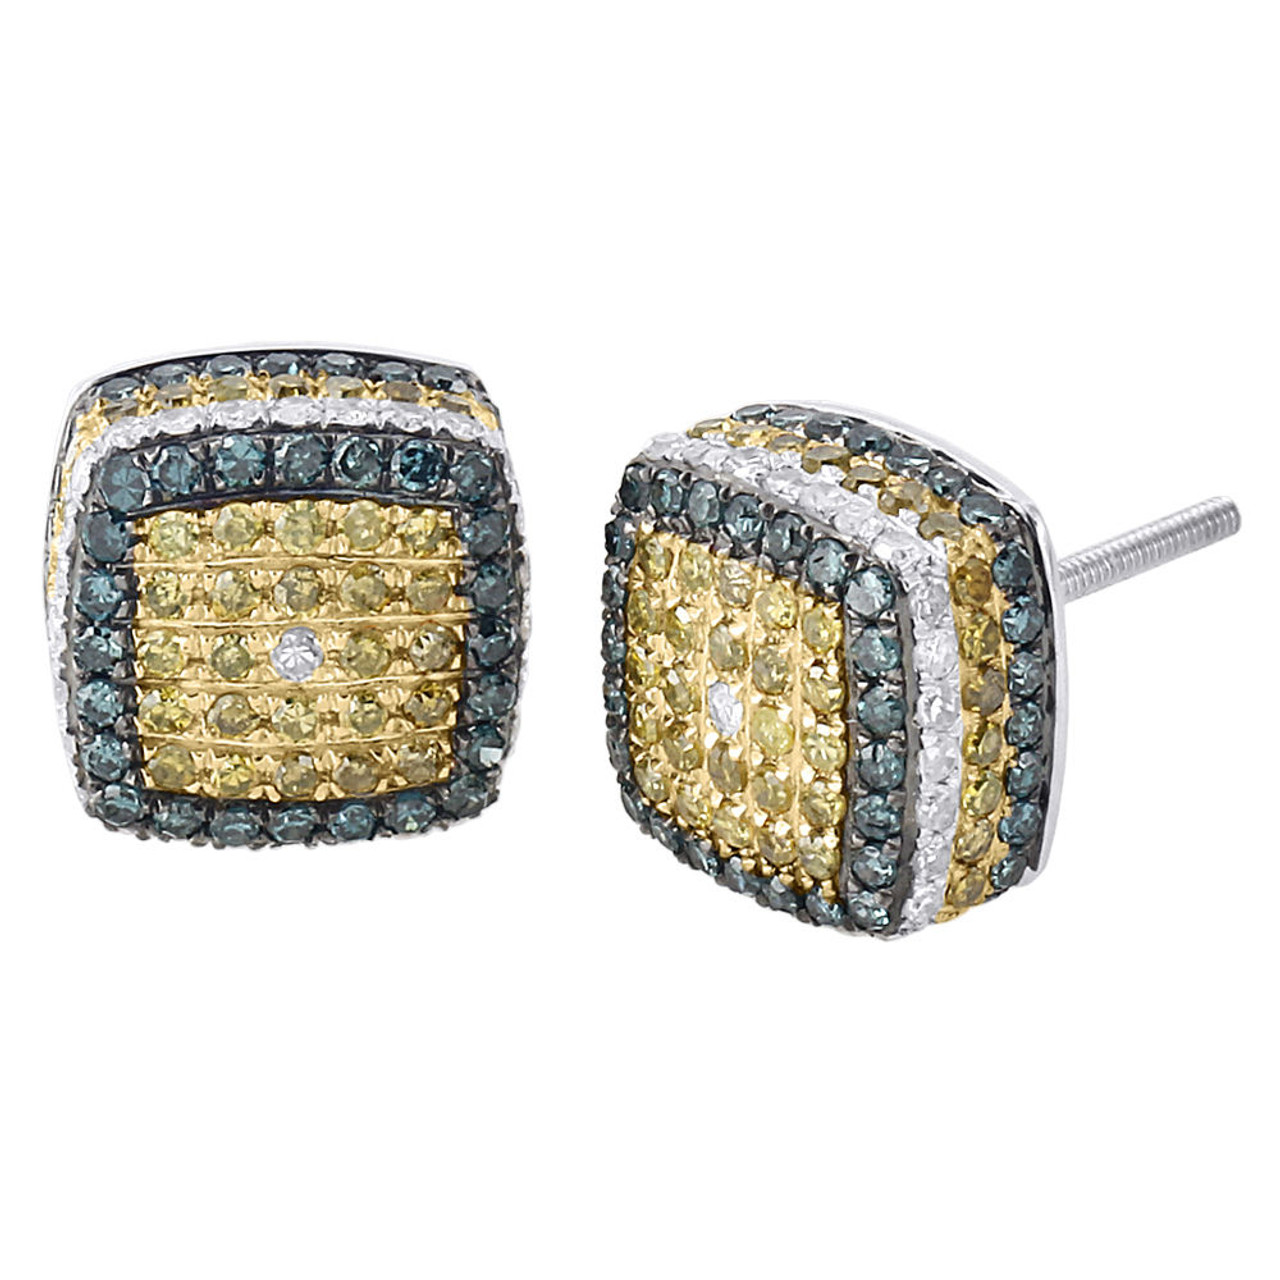 Cube Diamond Earrings for Men & Women 10K White Gold Square Stud